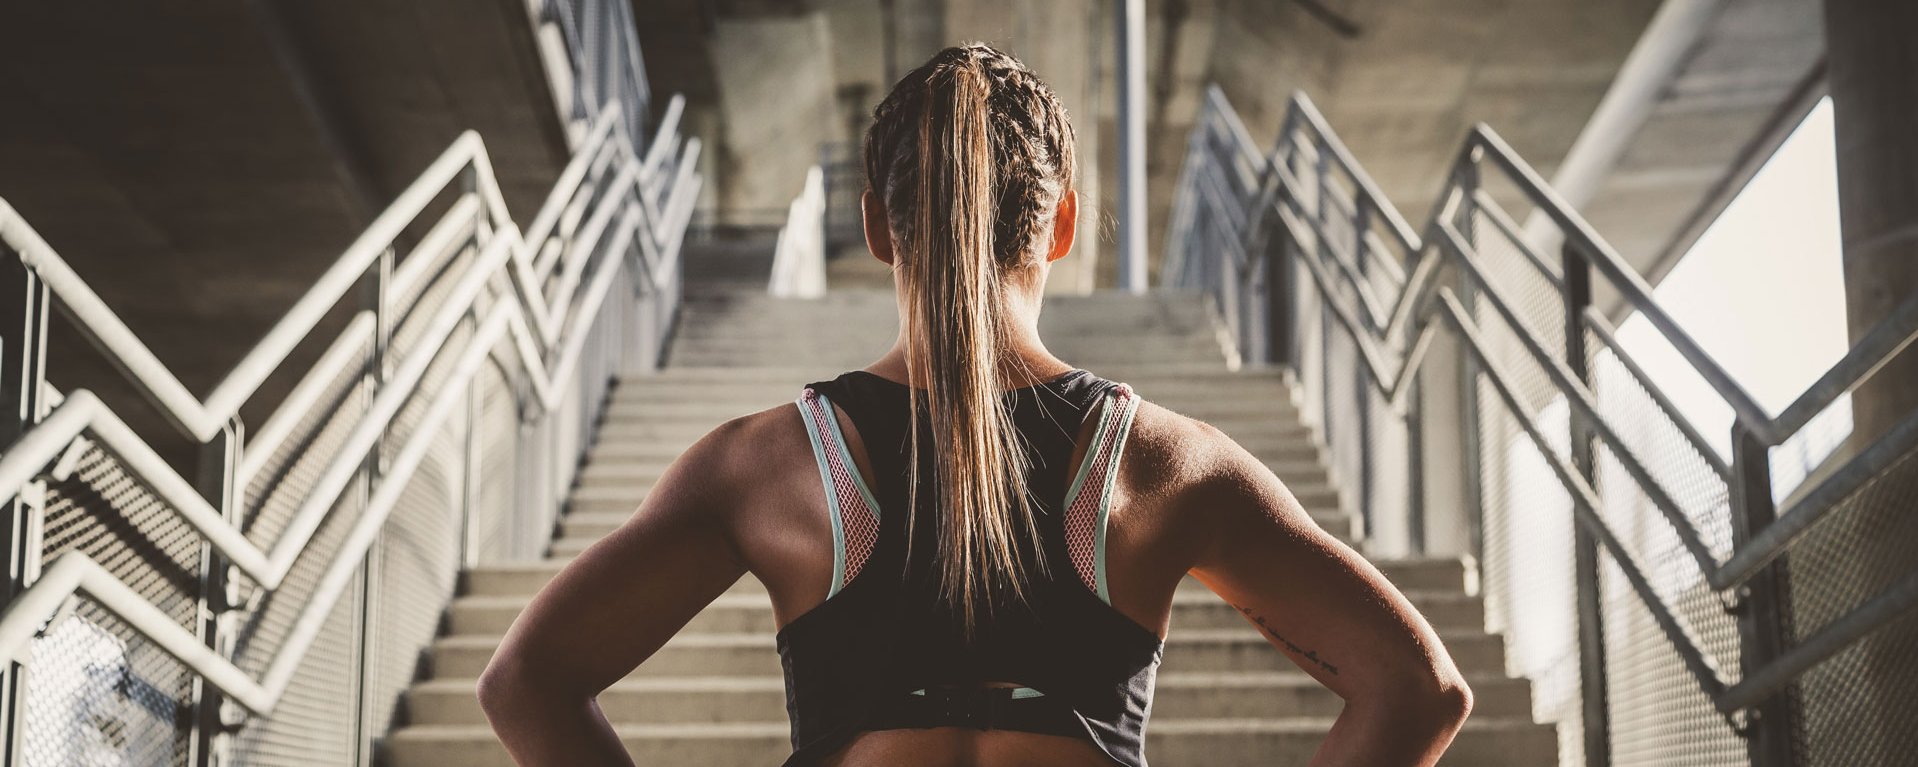 Eine Frau steht im Sportoutfit vor einer Treppe und ist bereits für neue Trainingsherausforderungen